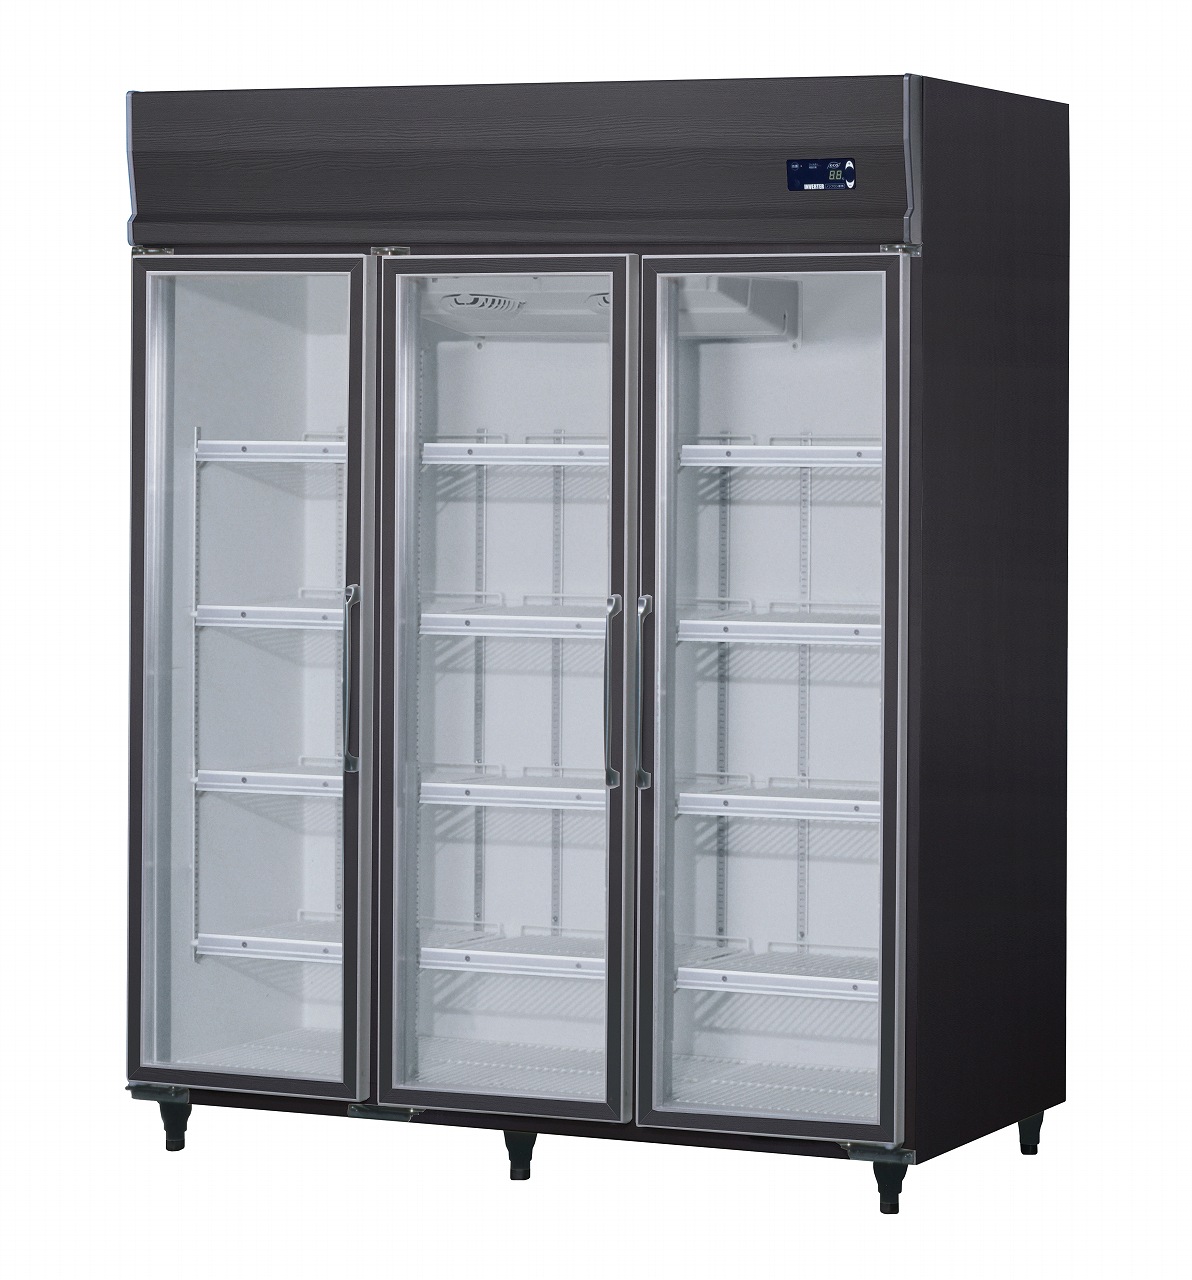 [上置型]インバータ制御冷蔵ショーケース エコ蔵くん | 店舗用冷凍